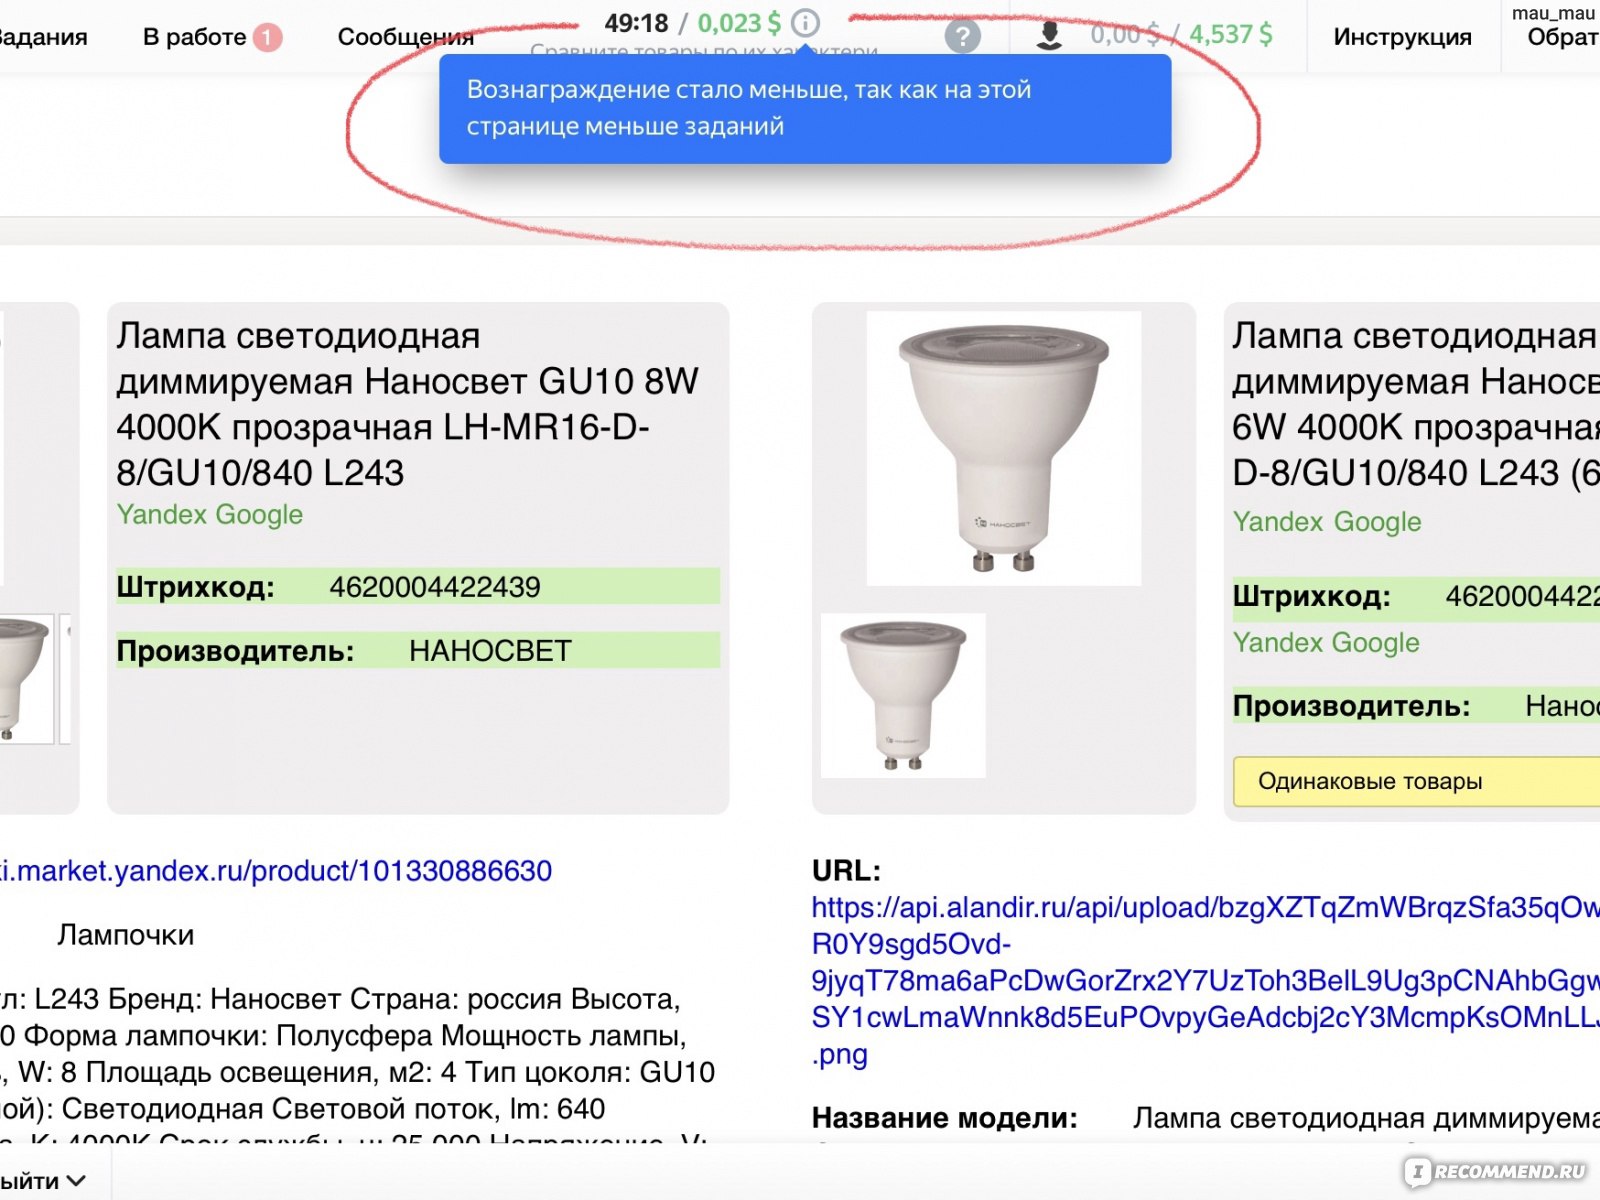 Заработок в телеграмме без вложений с выводом денег на карту сбербанка на русском языке фото 93